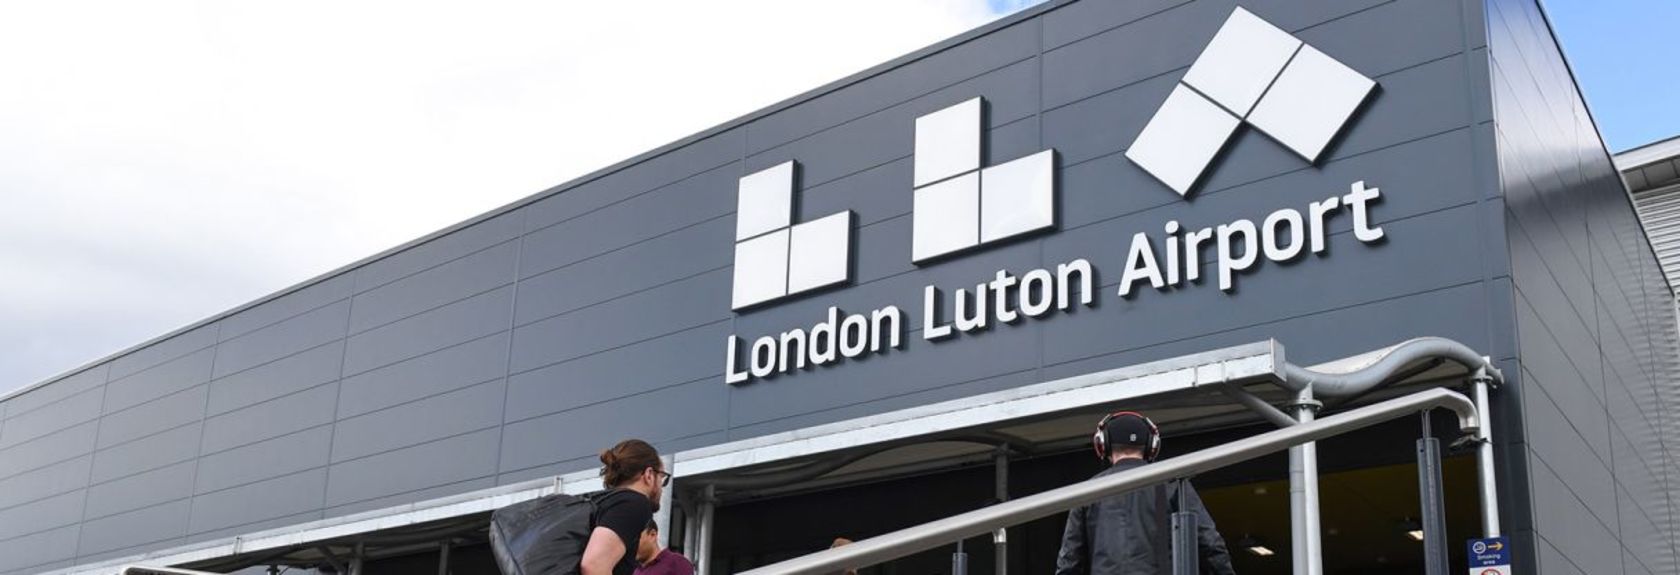 O aeroporto London Luton Airport (código IATA: LTN) é um dos seis aeroportos de Londres e está localizado 55 quilômetros a noroeste da cidade. O aeroporto está localizado próximo à cidade de Luton, da qual o aeroporto recebe seu nome. London Luton Airport é utilizado principalmente para vôos dentro da Europa. Os principais usuários do aeroporto são as companhias aéreas de baixo orçamento da Easyjet e Ryanair. Easyjet usa Luton Airport, por exemplo, como um hub onde os passageiros da companhia aérea podem se transferir para outros vôos Easyjet. Além dessas companhias aéreas, a British Airways, Vueling e Wizz Air também voam para Luton Airport.